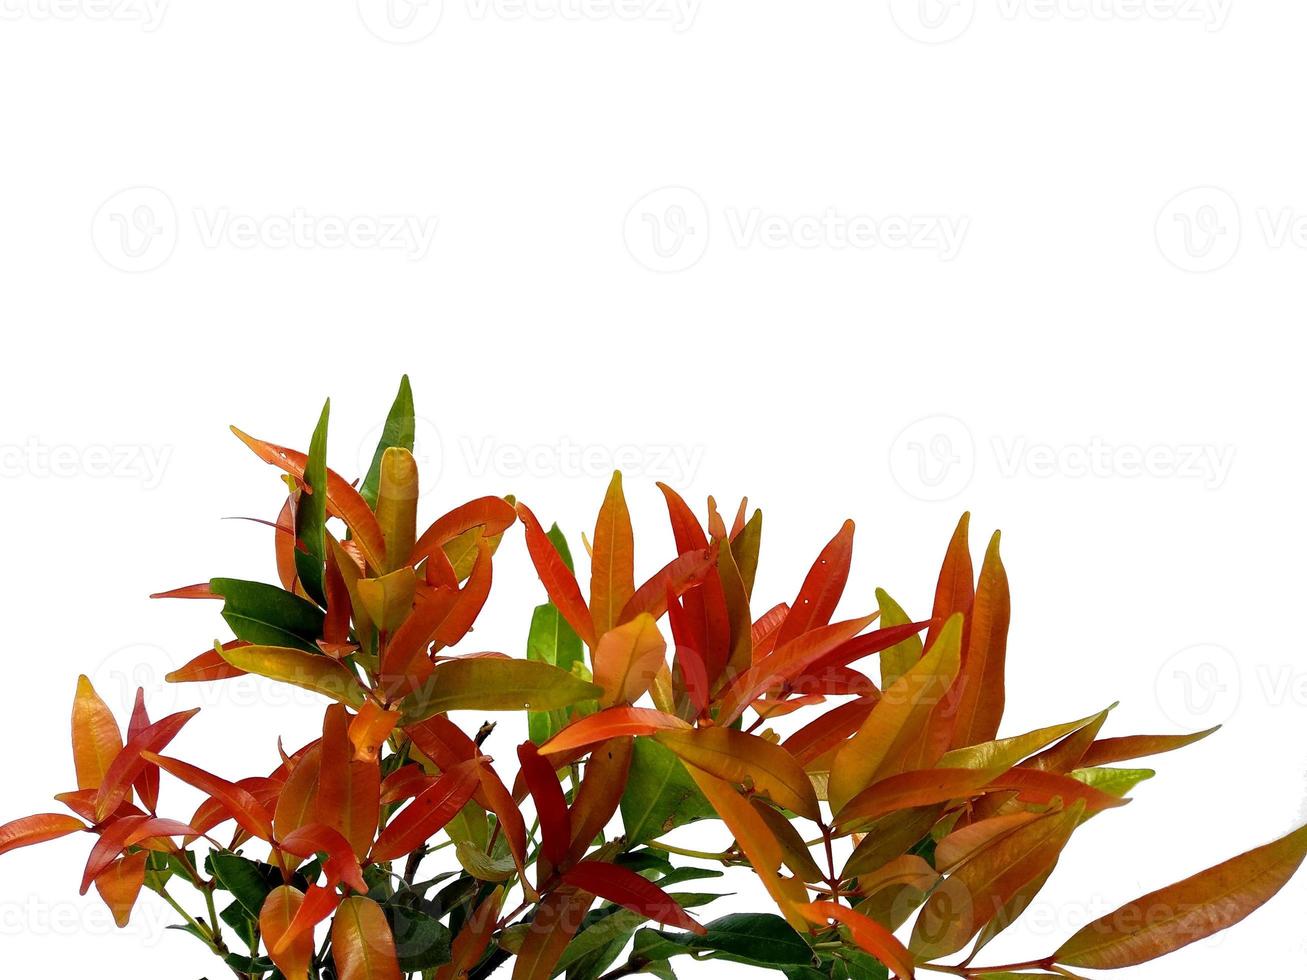 Syzygium oleana Blätter auf weißem Hintergrund foto